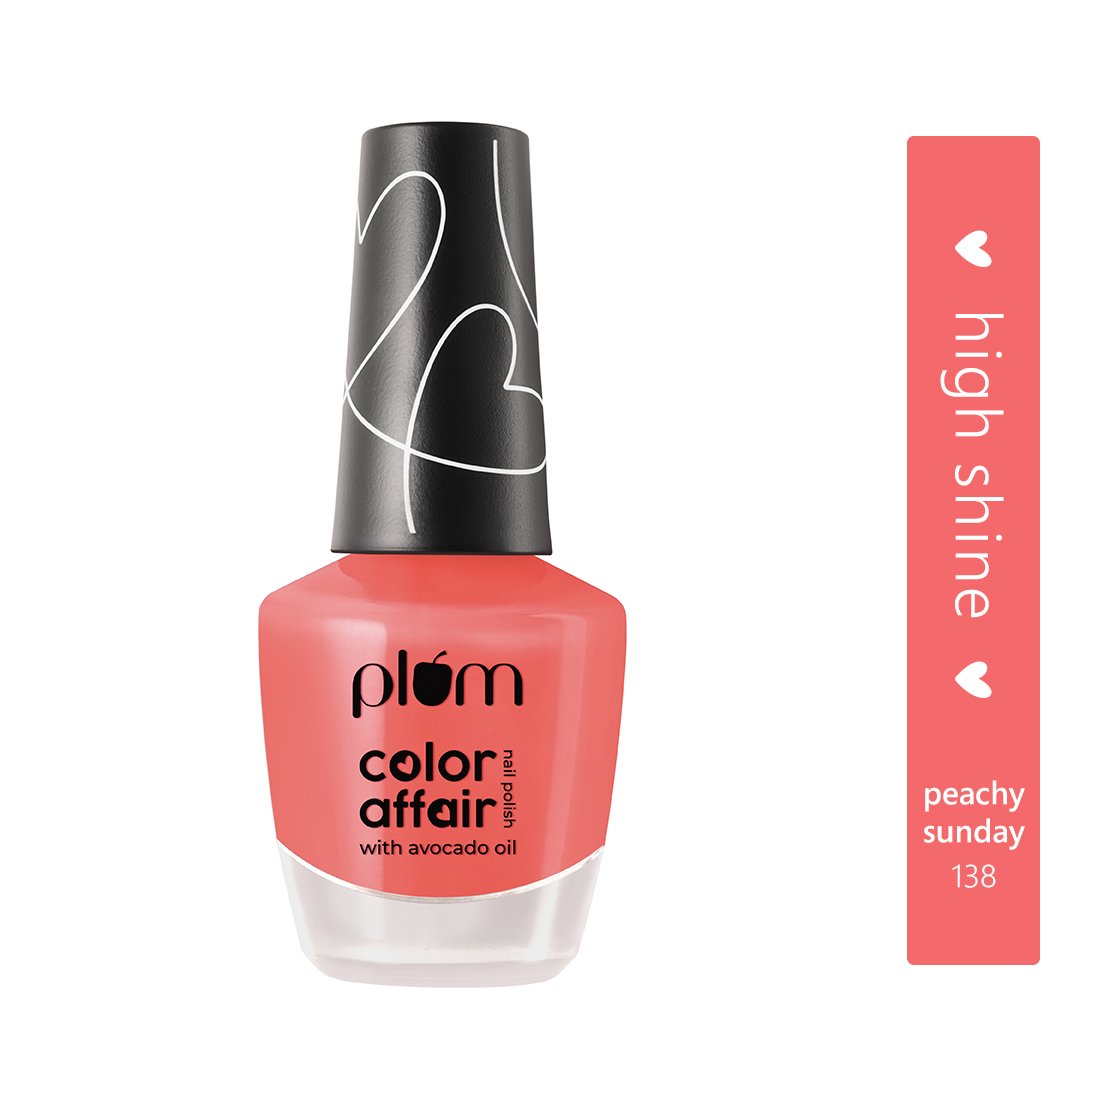 Plum Color Affair Nail Polish - Peachy Sunday - 138